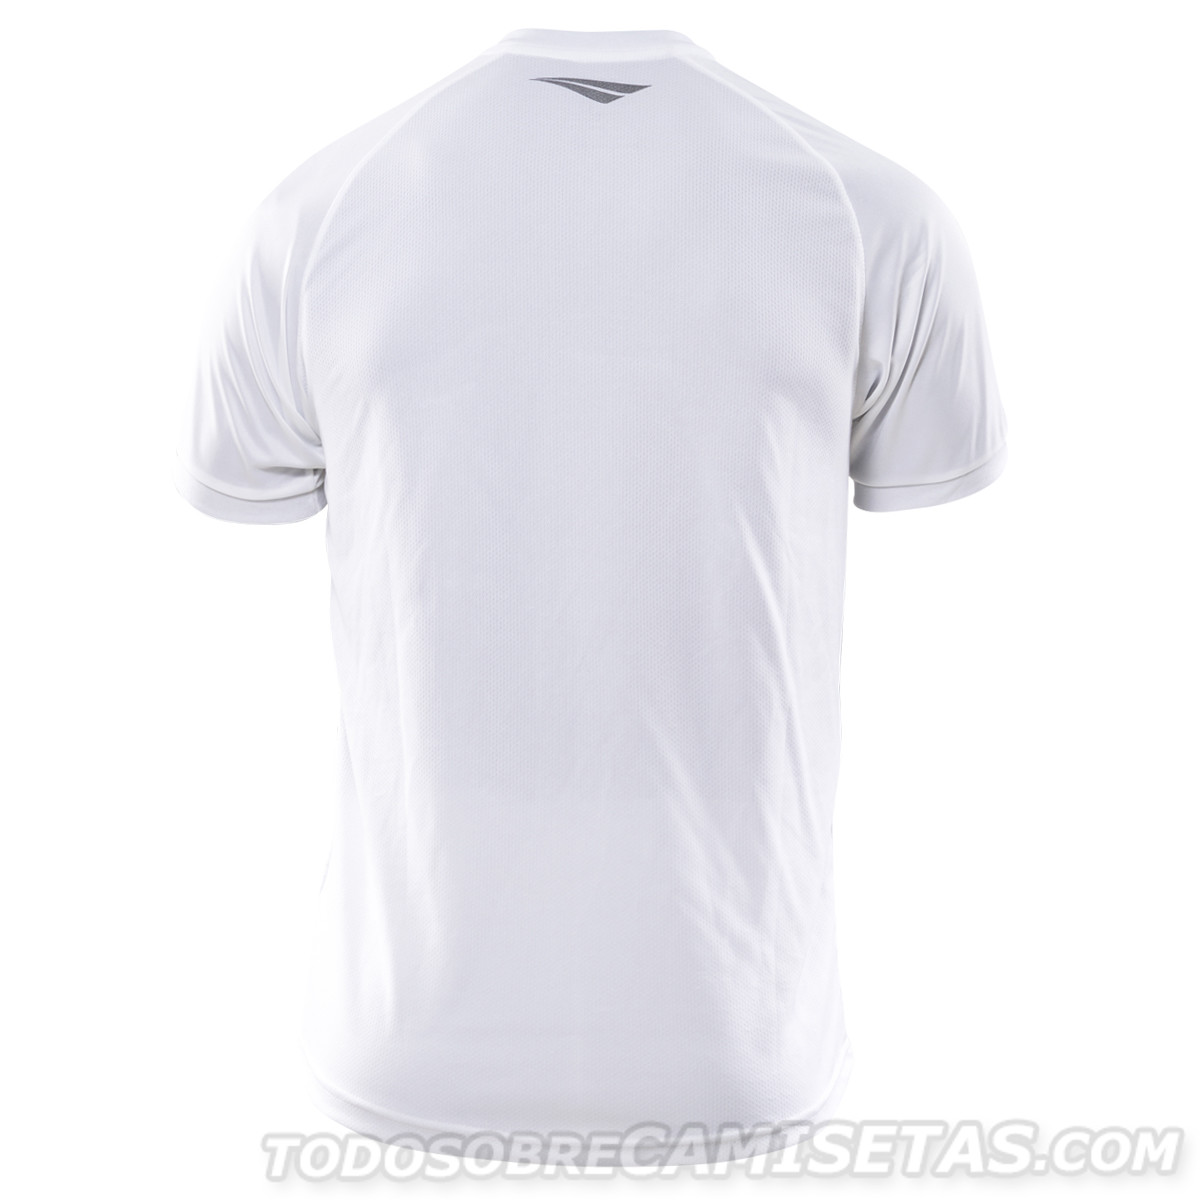 Camiseta Alternativa Penalty de Talleres de Córdoba 2018-19